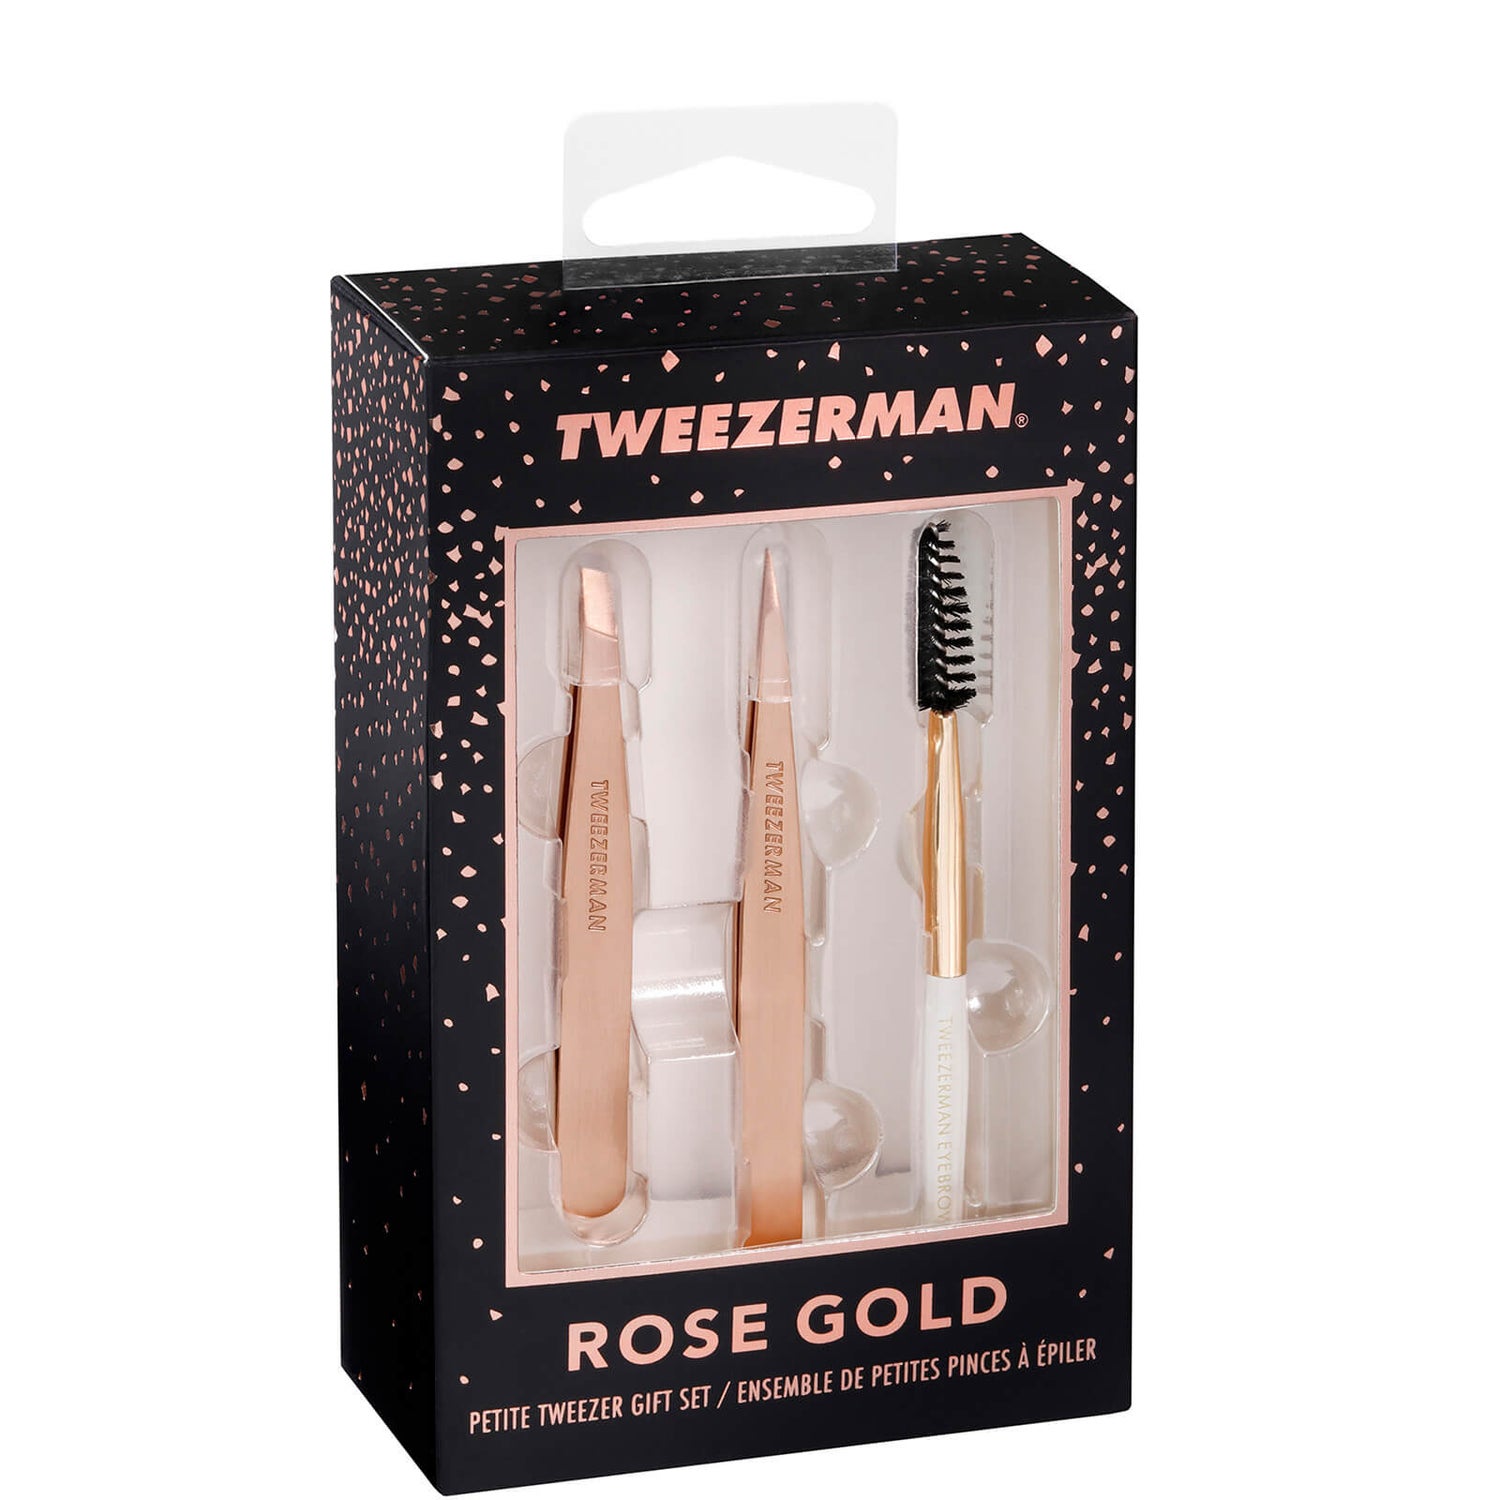 Tweezerman Rose Gold Petite Set (Worth £32.00)